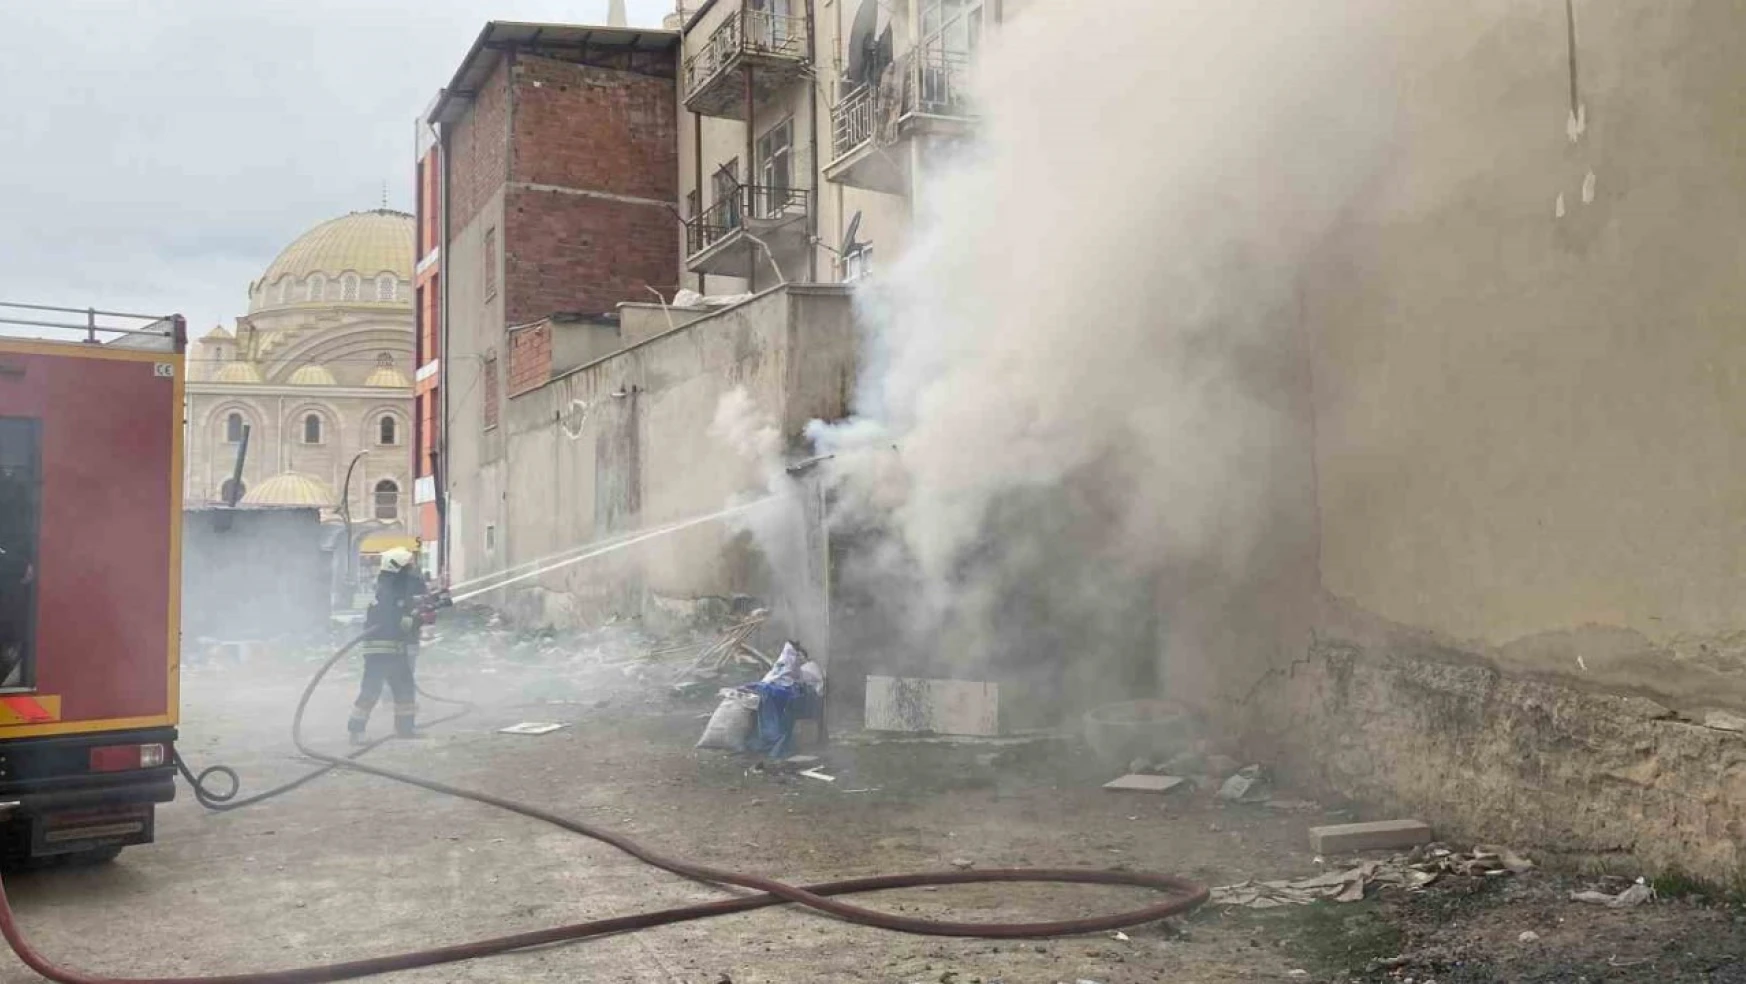 Konya'da apartmanın yanına yapılan depoda yangın